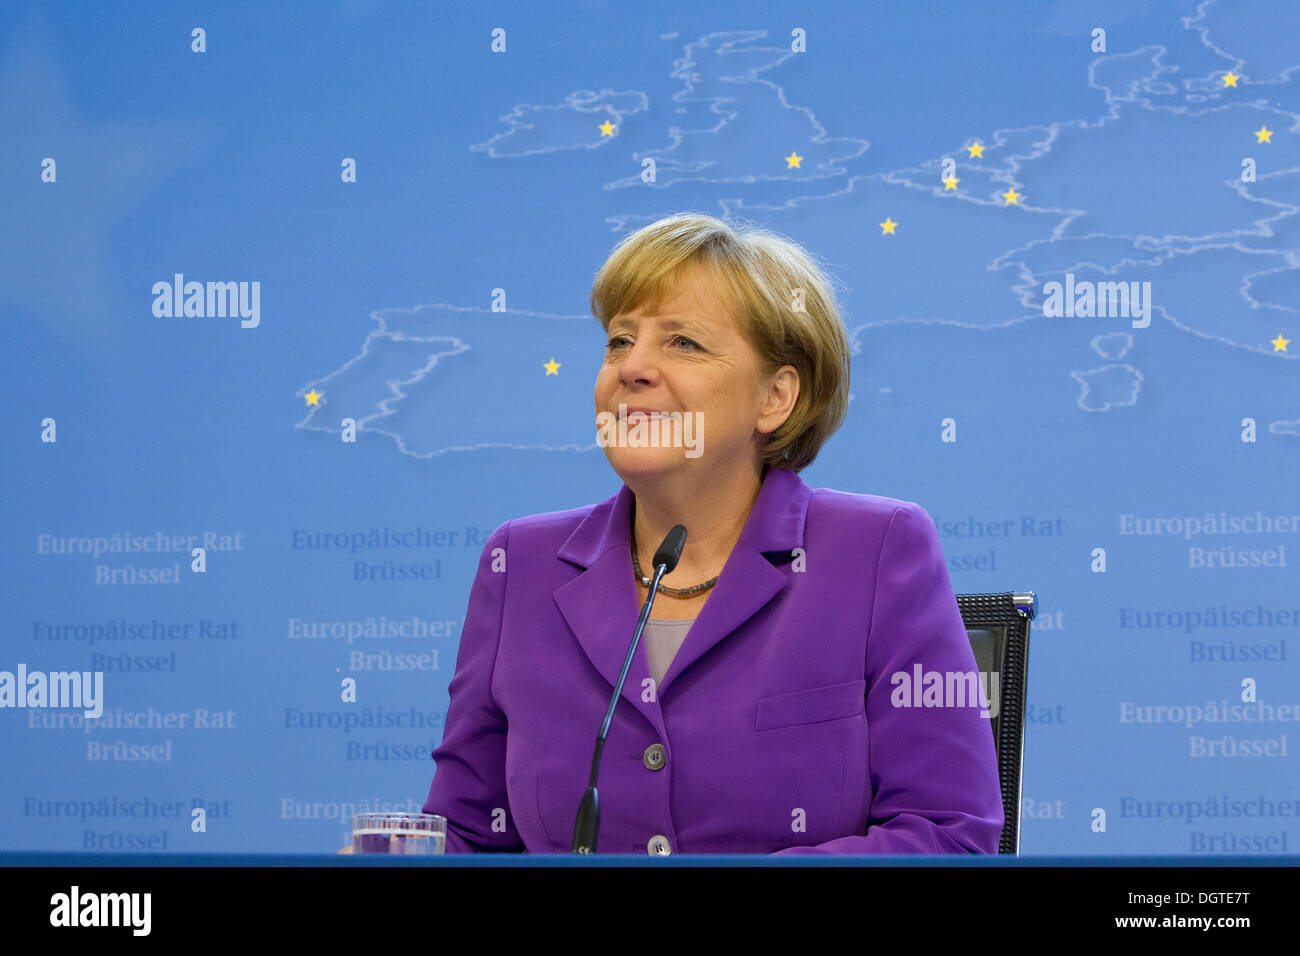 angela merkel german chancellor speaking smiling Stock Photo